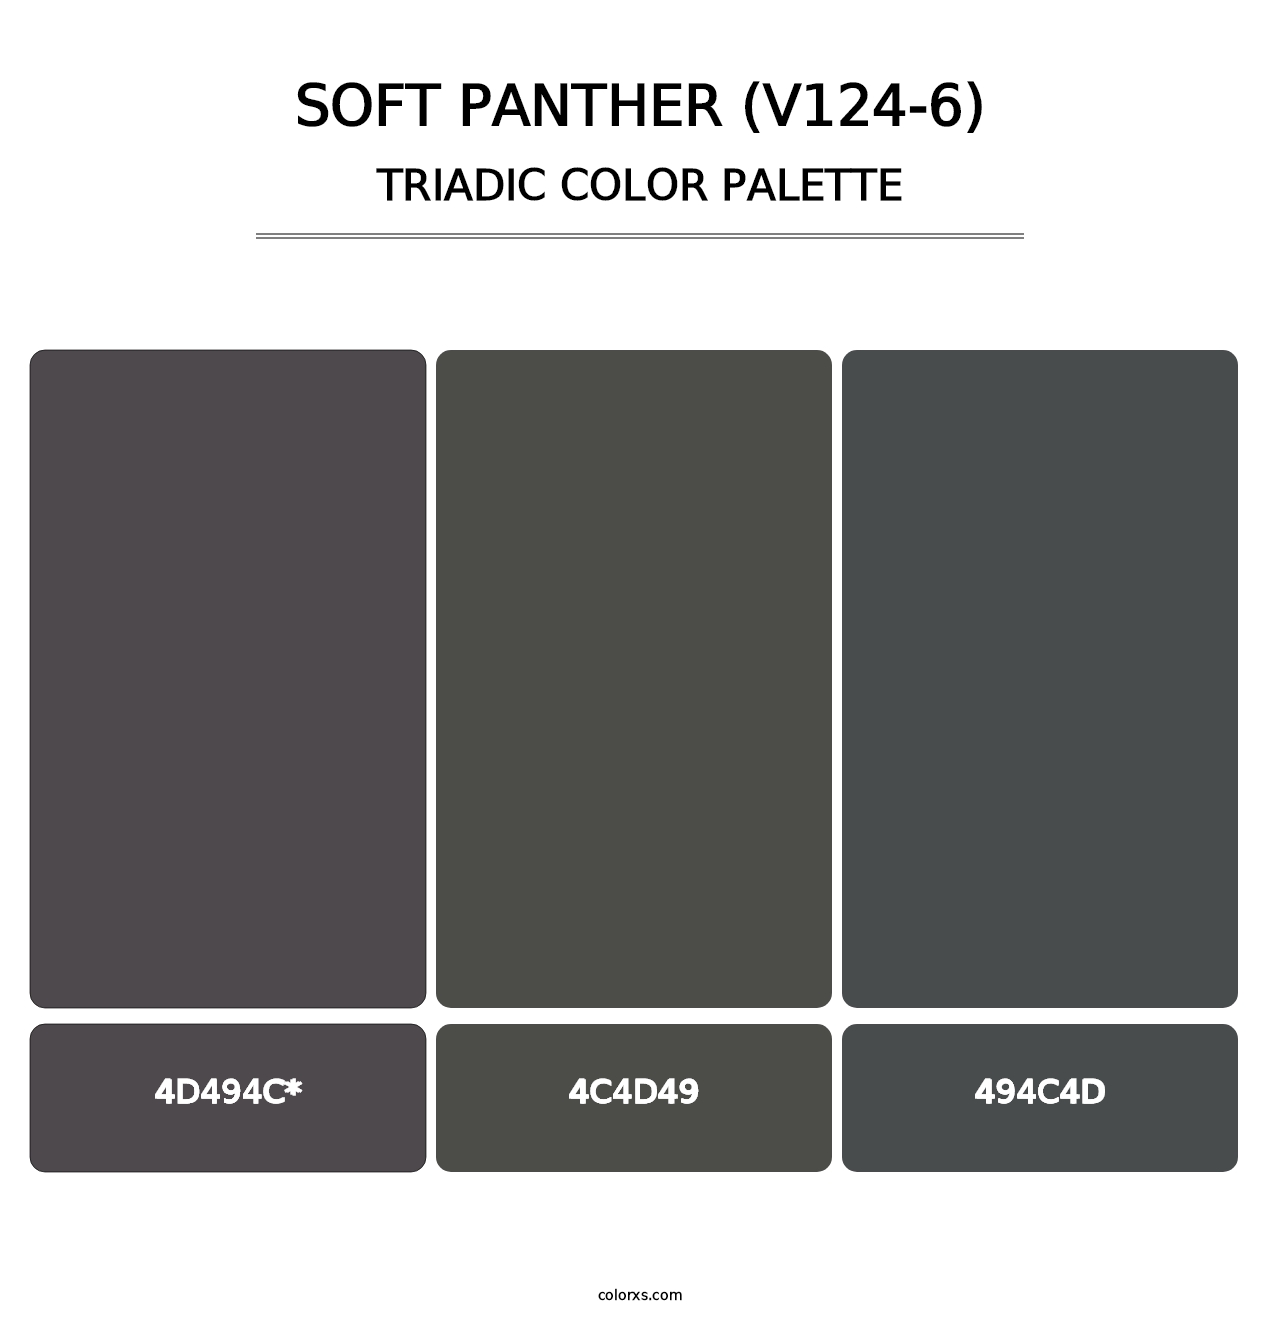 Soft Panther (V124-6) - Triadic Color Palette